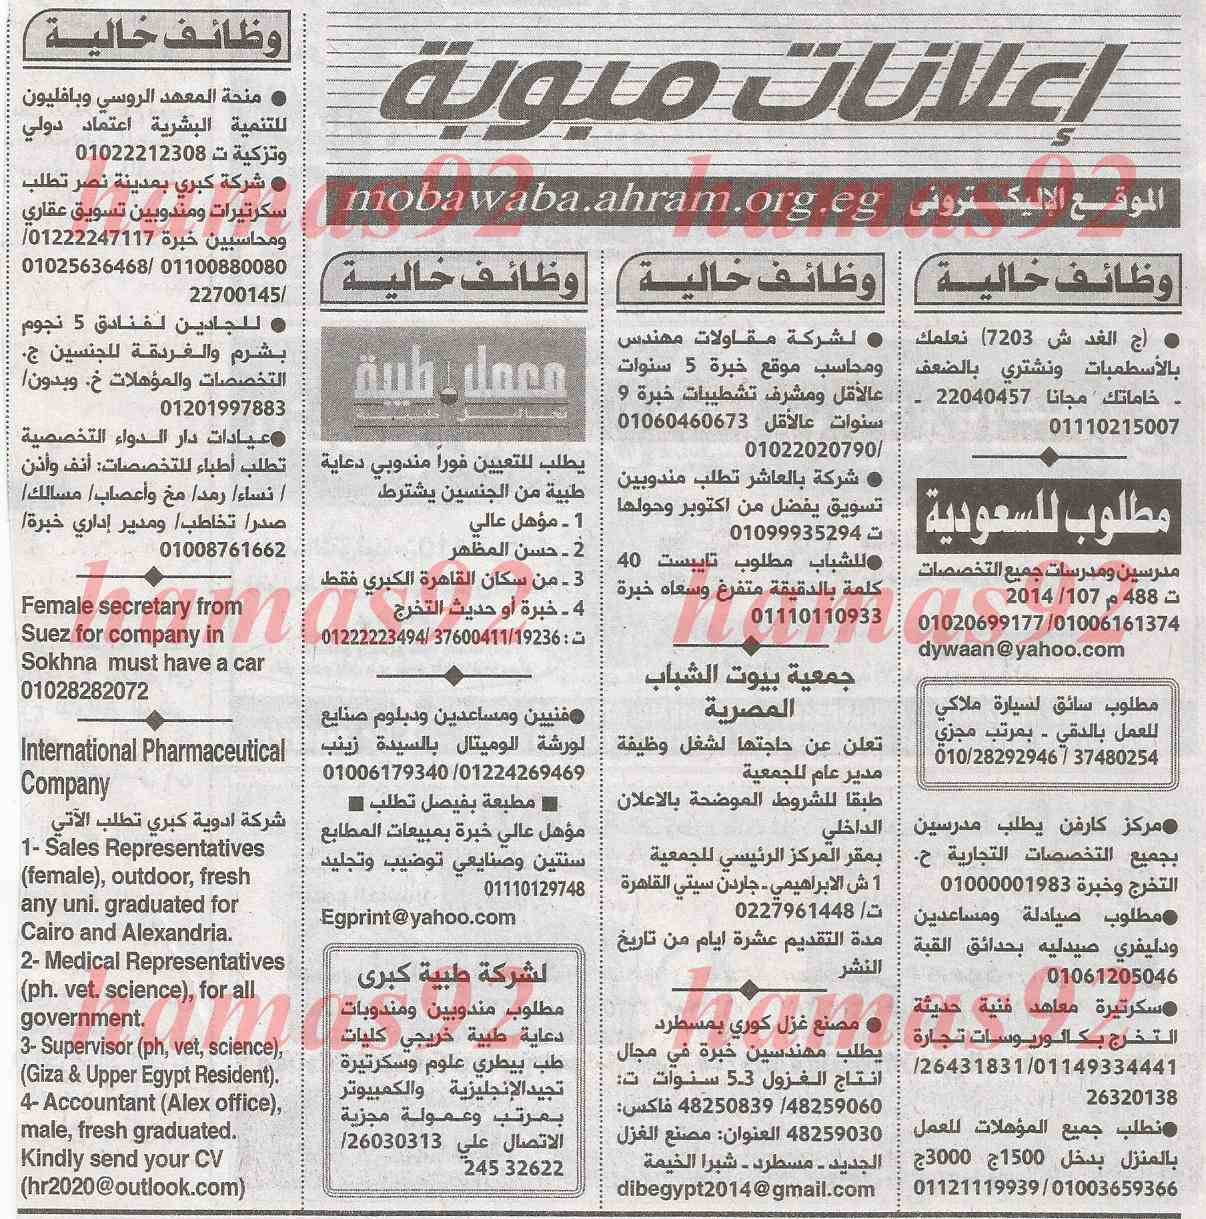 وظائف خالية اليوم السبت 22 شباط 2014 , وظائف جريدة الاهرام يوم السبت 22/2/2014